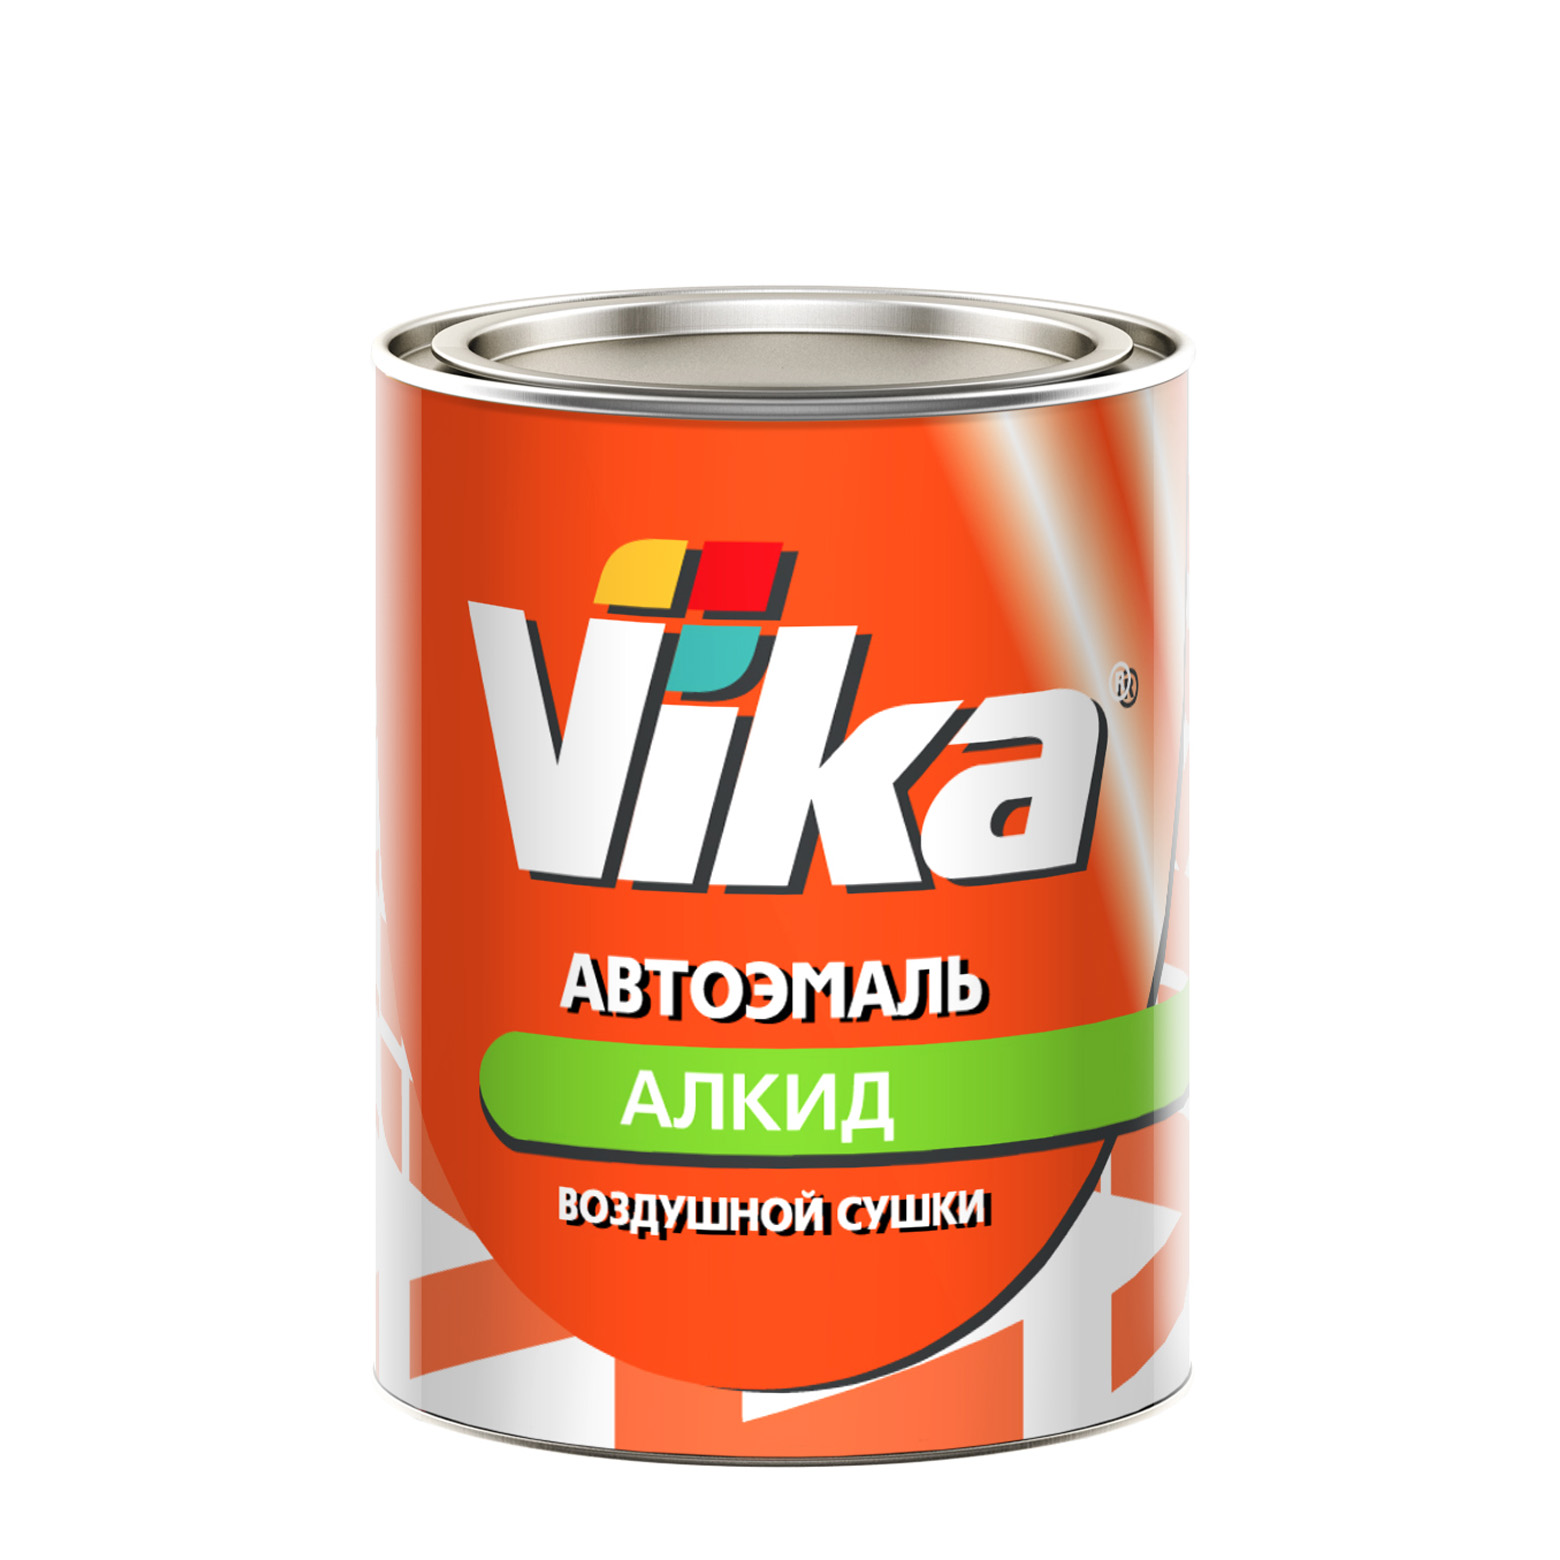 Фото 1 - Автоэмаль Vika-60, цвет 564 Кипарис алкидная глянцевая естественной сушки - 0,8 кг.